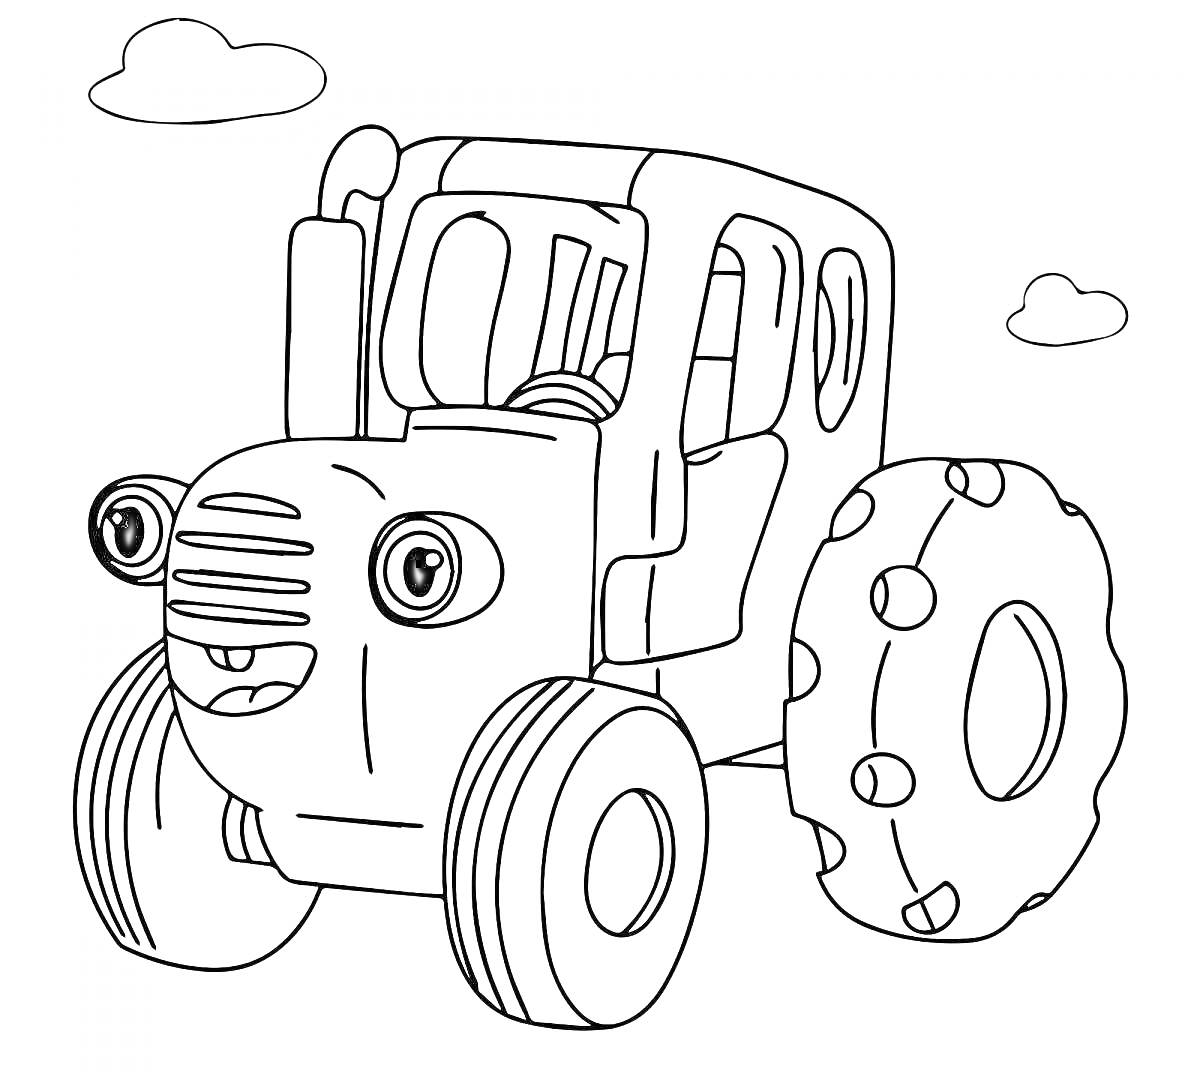 Раскраска Синий трактор с большими глазами и хлебушком на фоне облаков